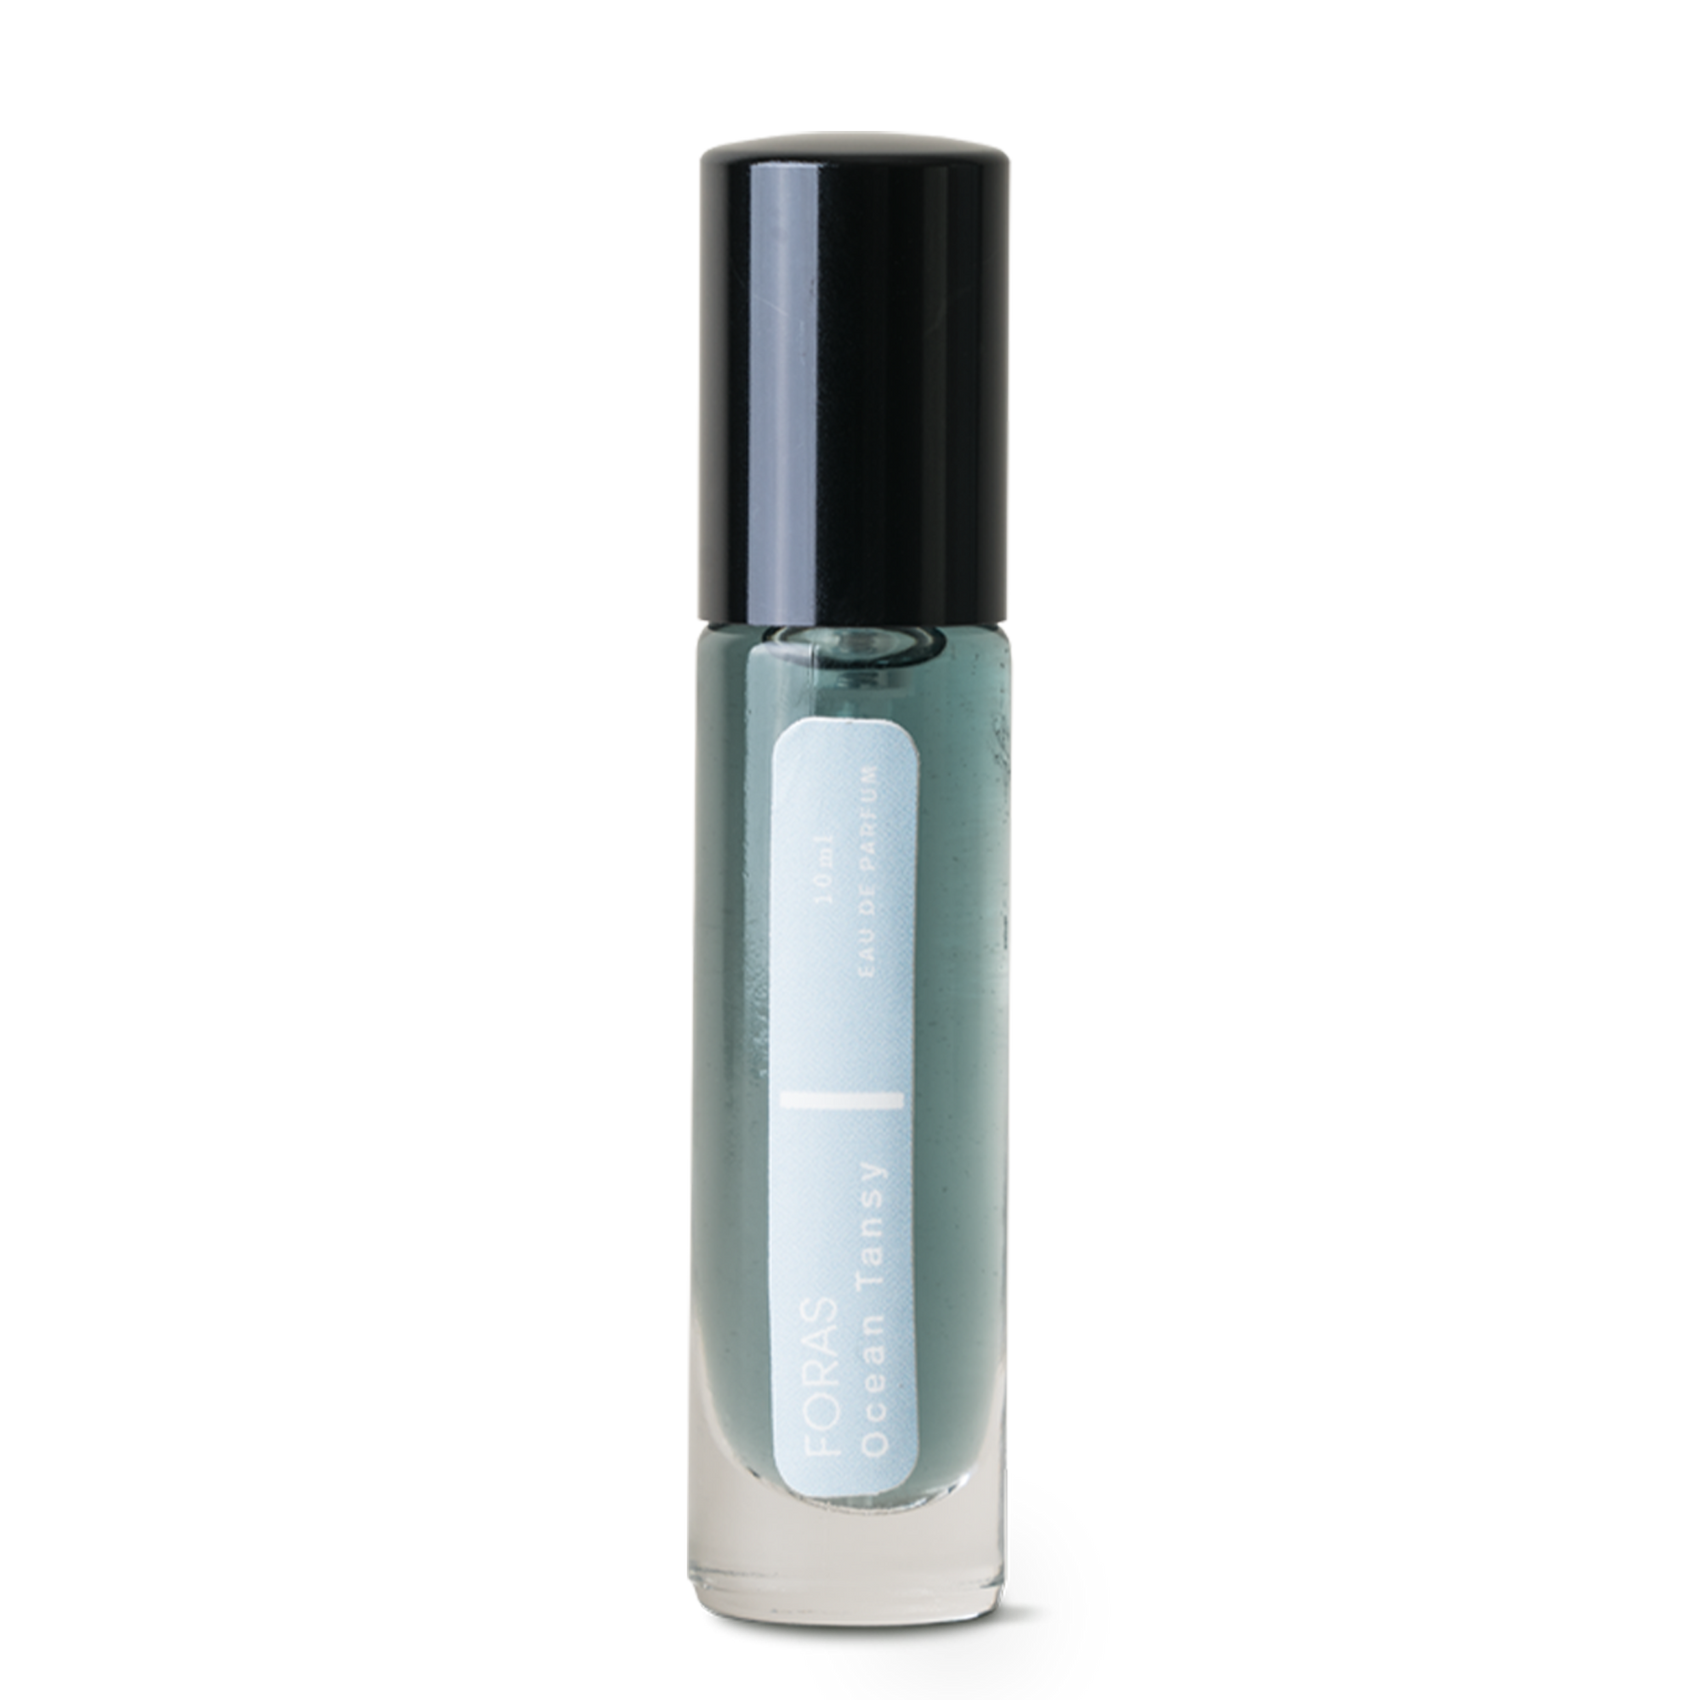 Ocean Tansy fragrance - 10ml bottle